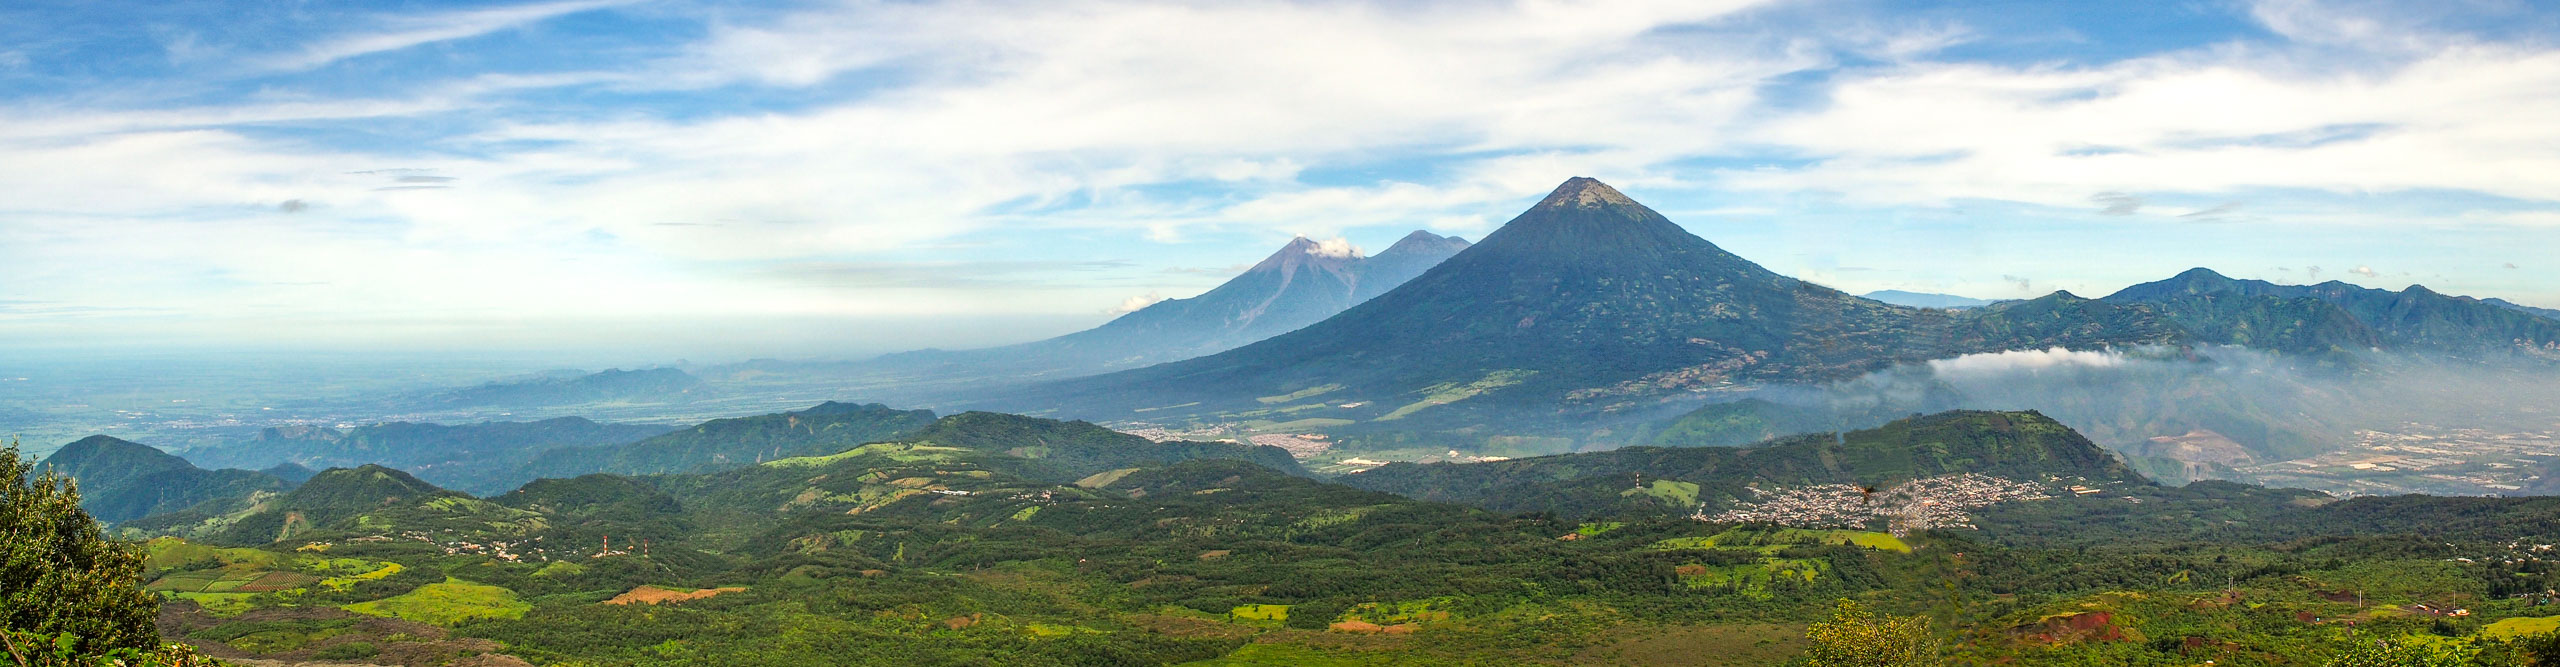 Panoramic view from Pacaya volcano, Guatemala 